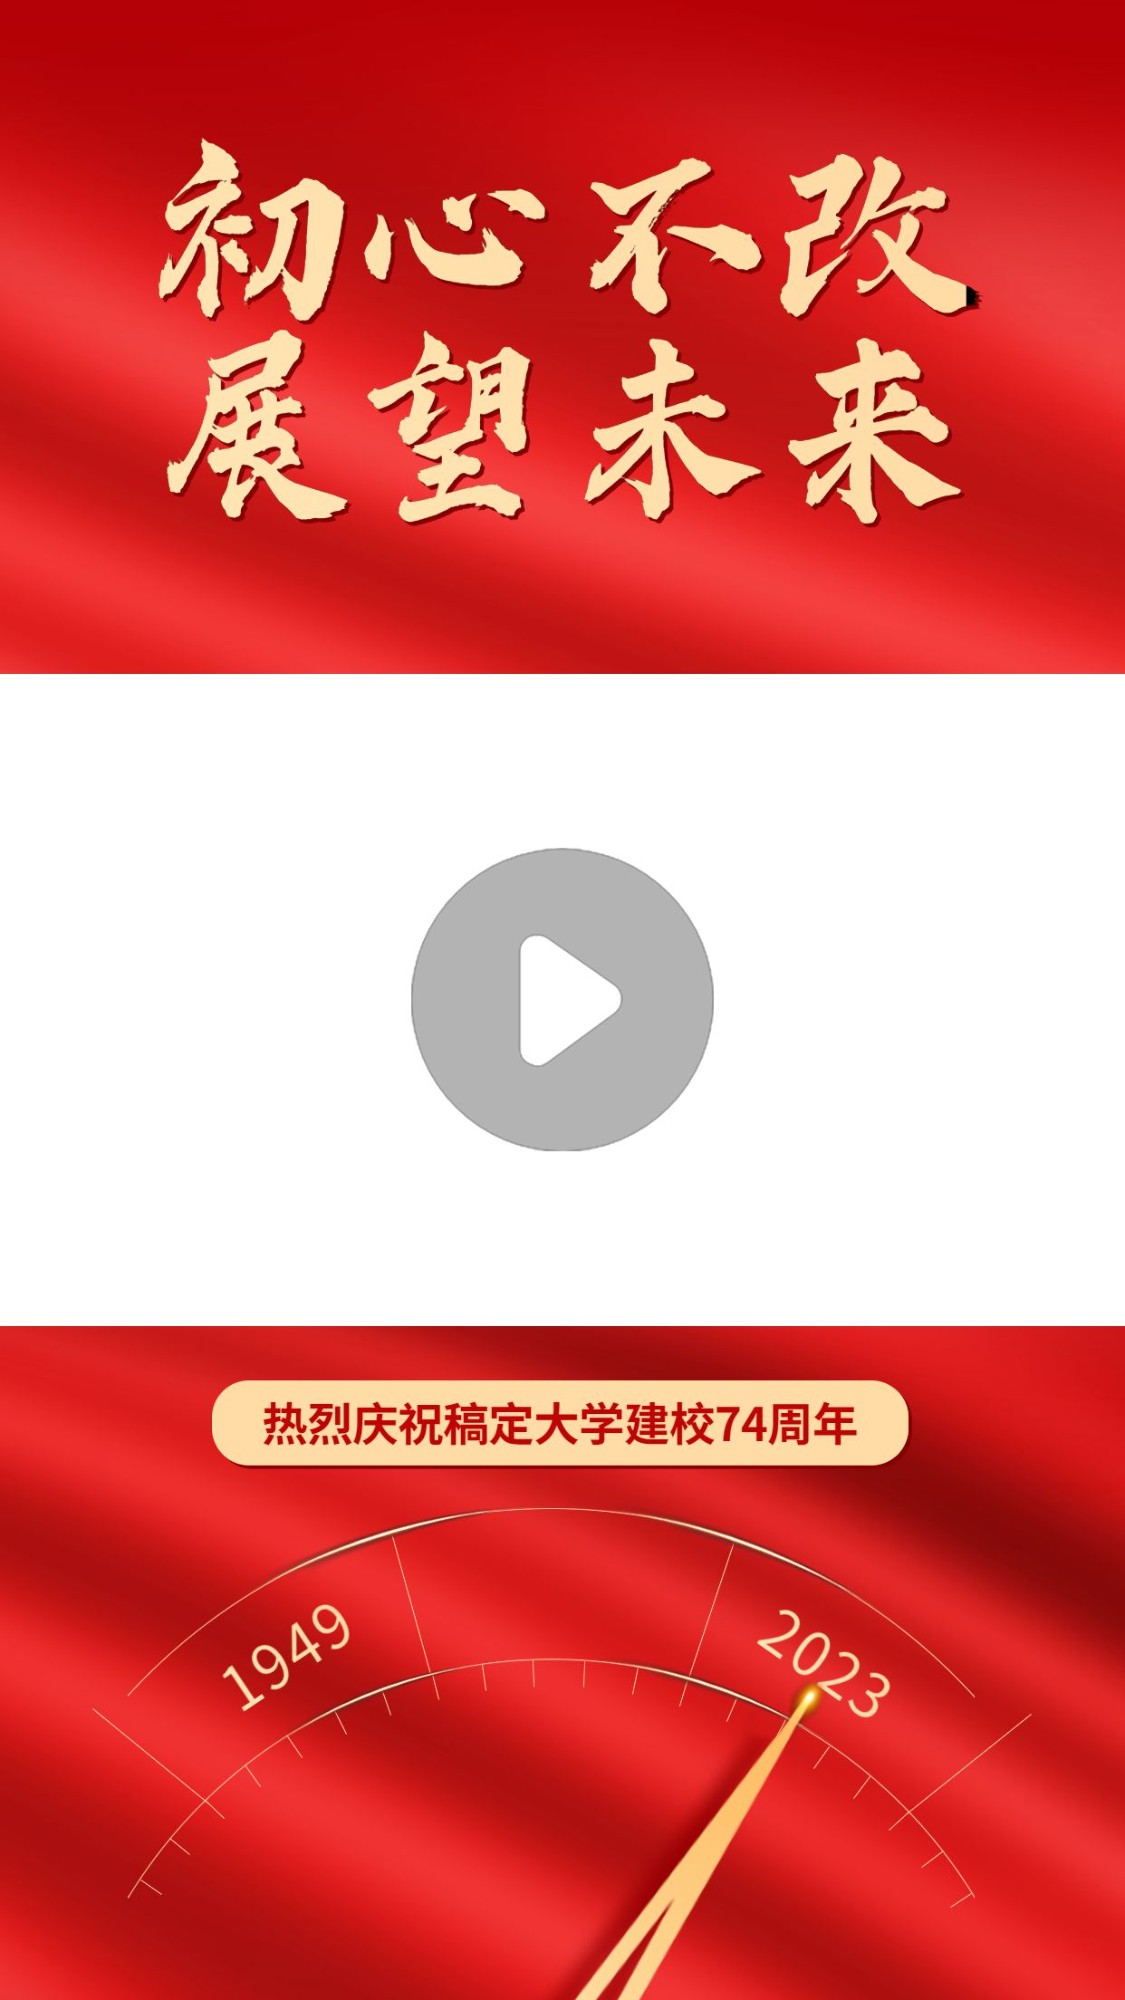 国庆节祝福红金短视频边框背景